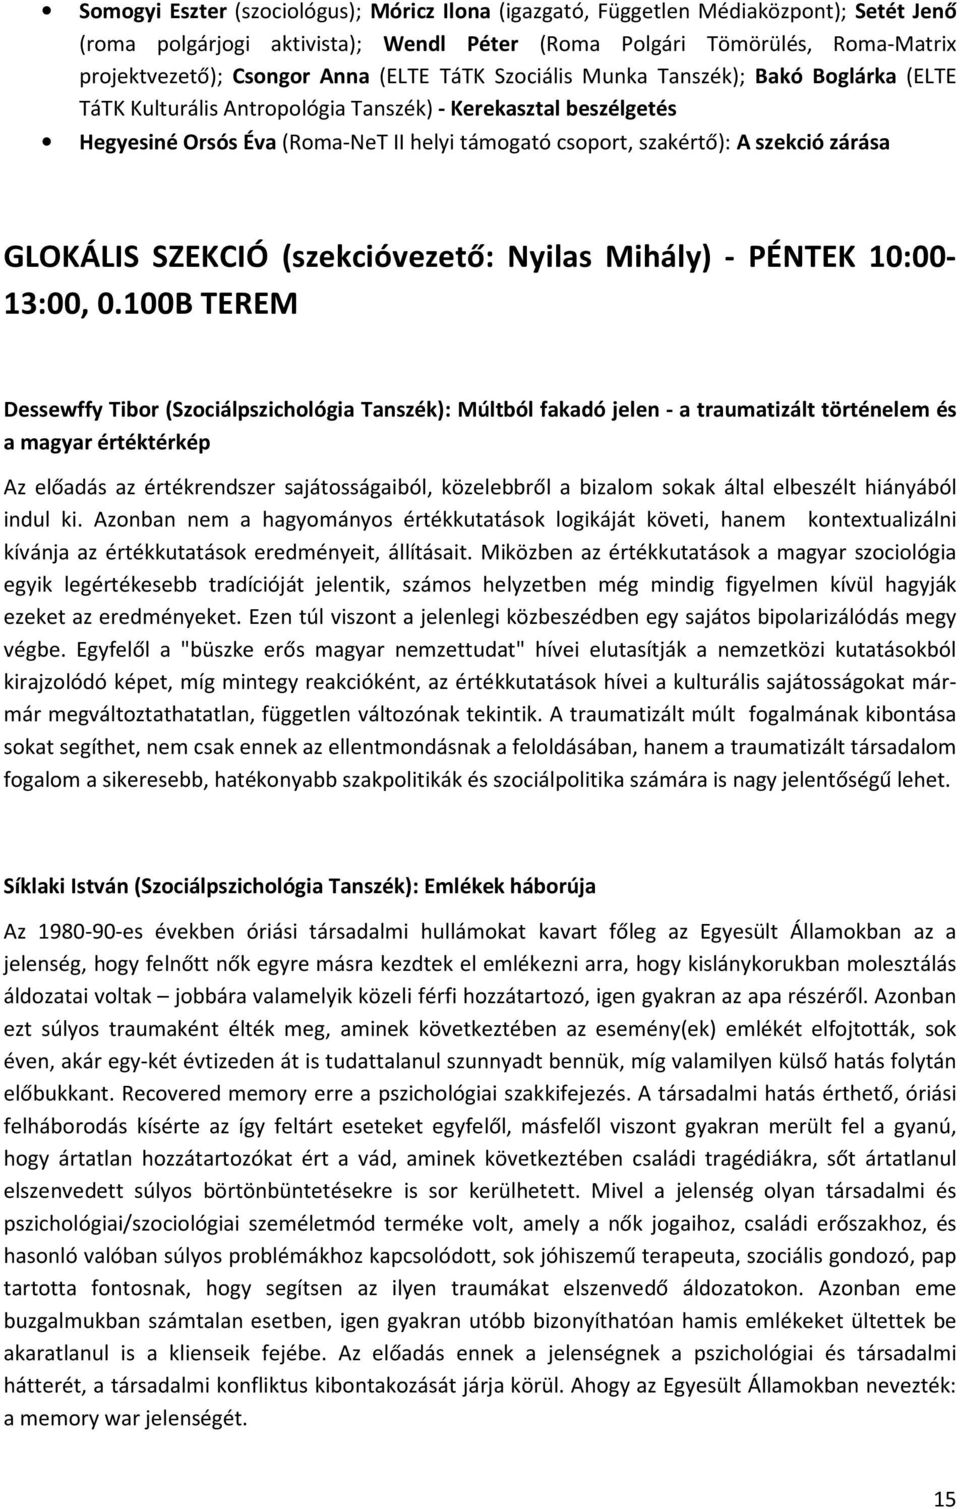 zárása GLOKÁLIS SZEKCIÓ (szekcióvezető: Nyilas Mihály) - PÉNTEK 10:00-13:00, 0.